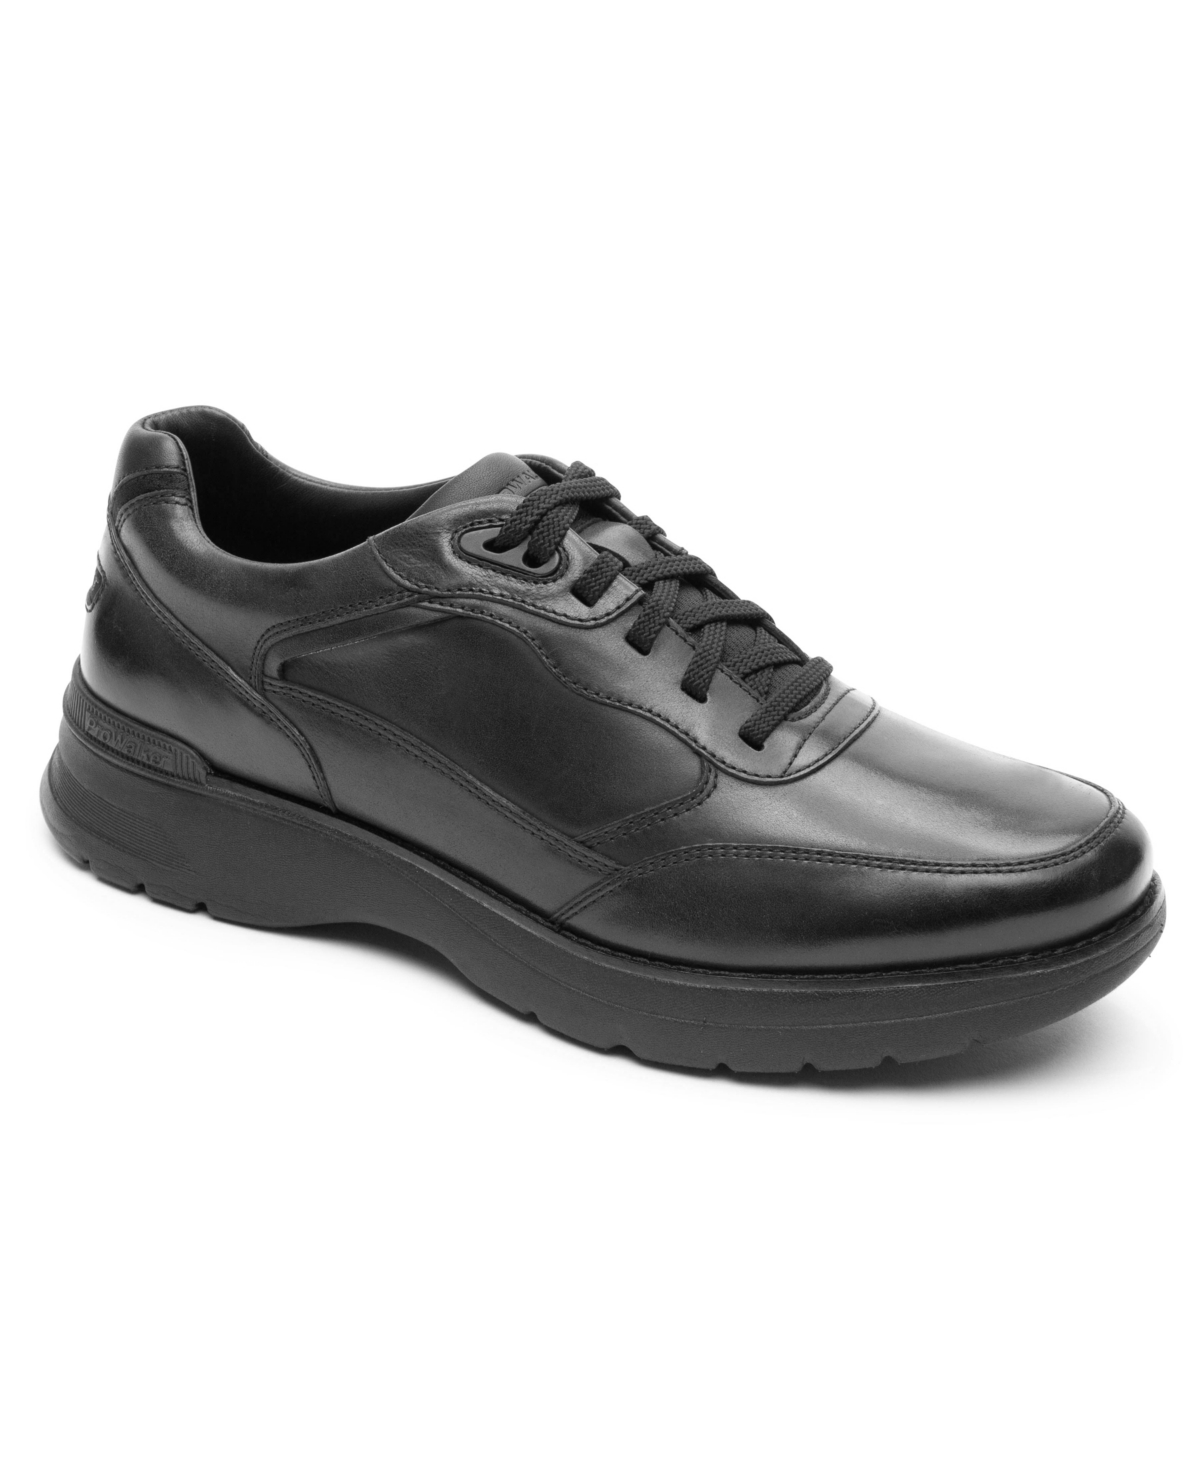 Men's Prowalker Next Ubal Lace Up Shoes - Black Lea